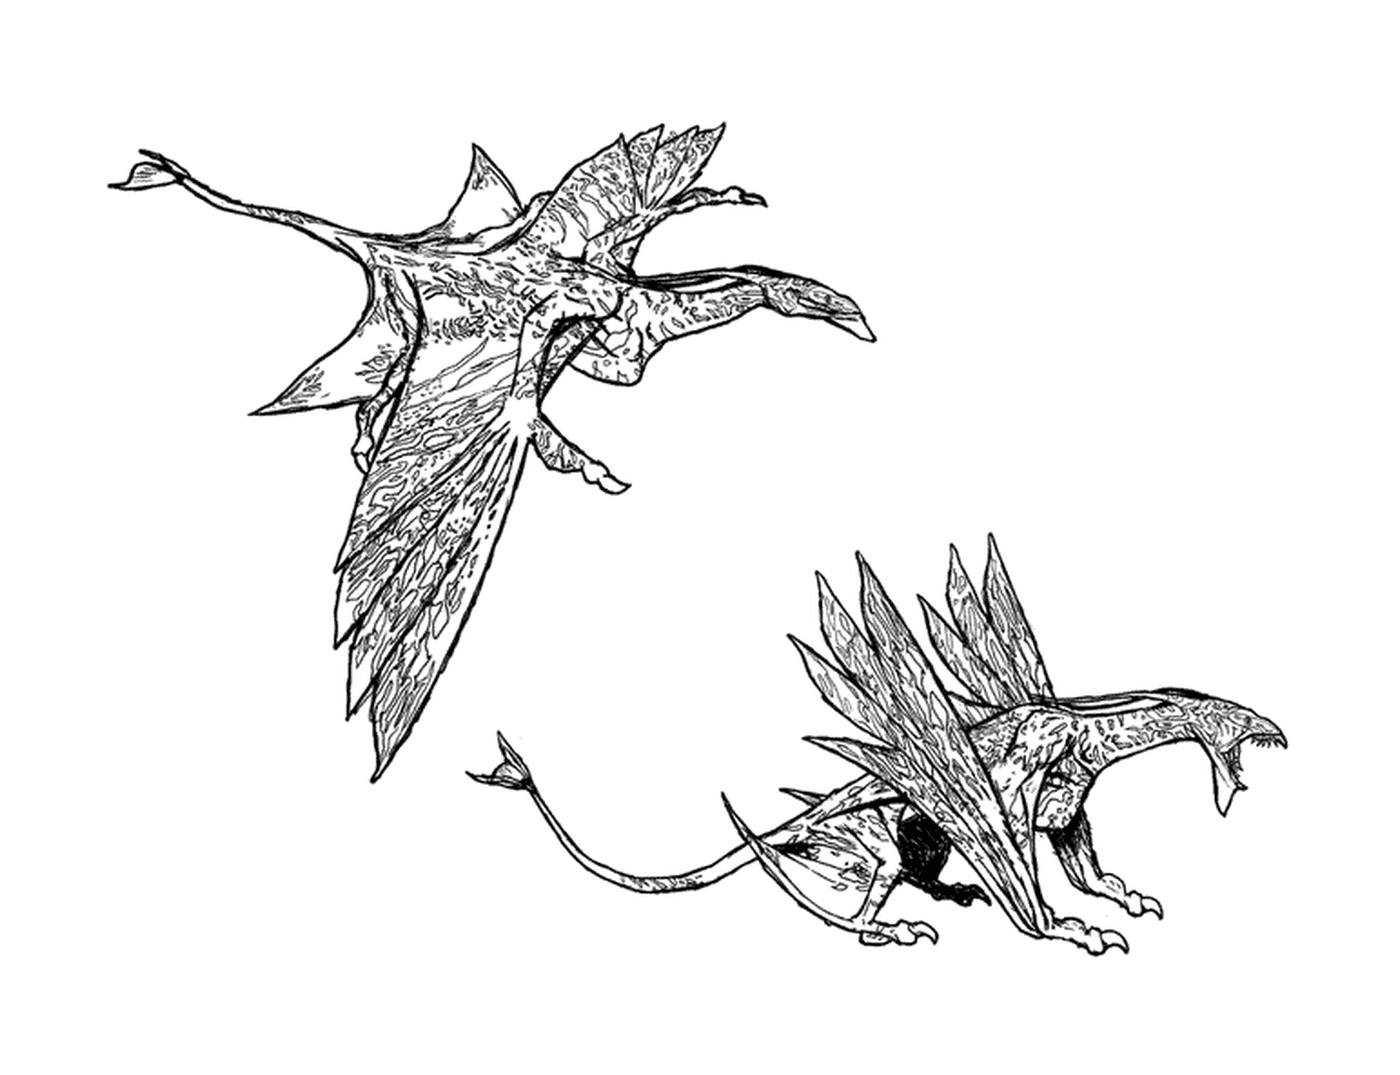  Dois desenhos de um dragão de asas espaçadas 